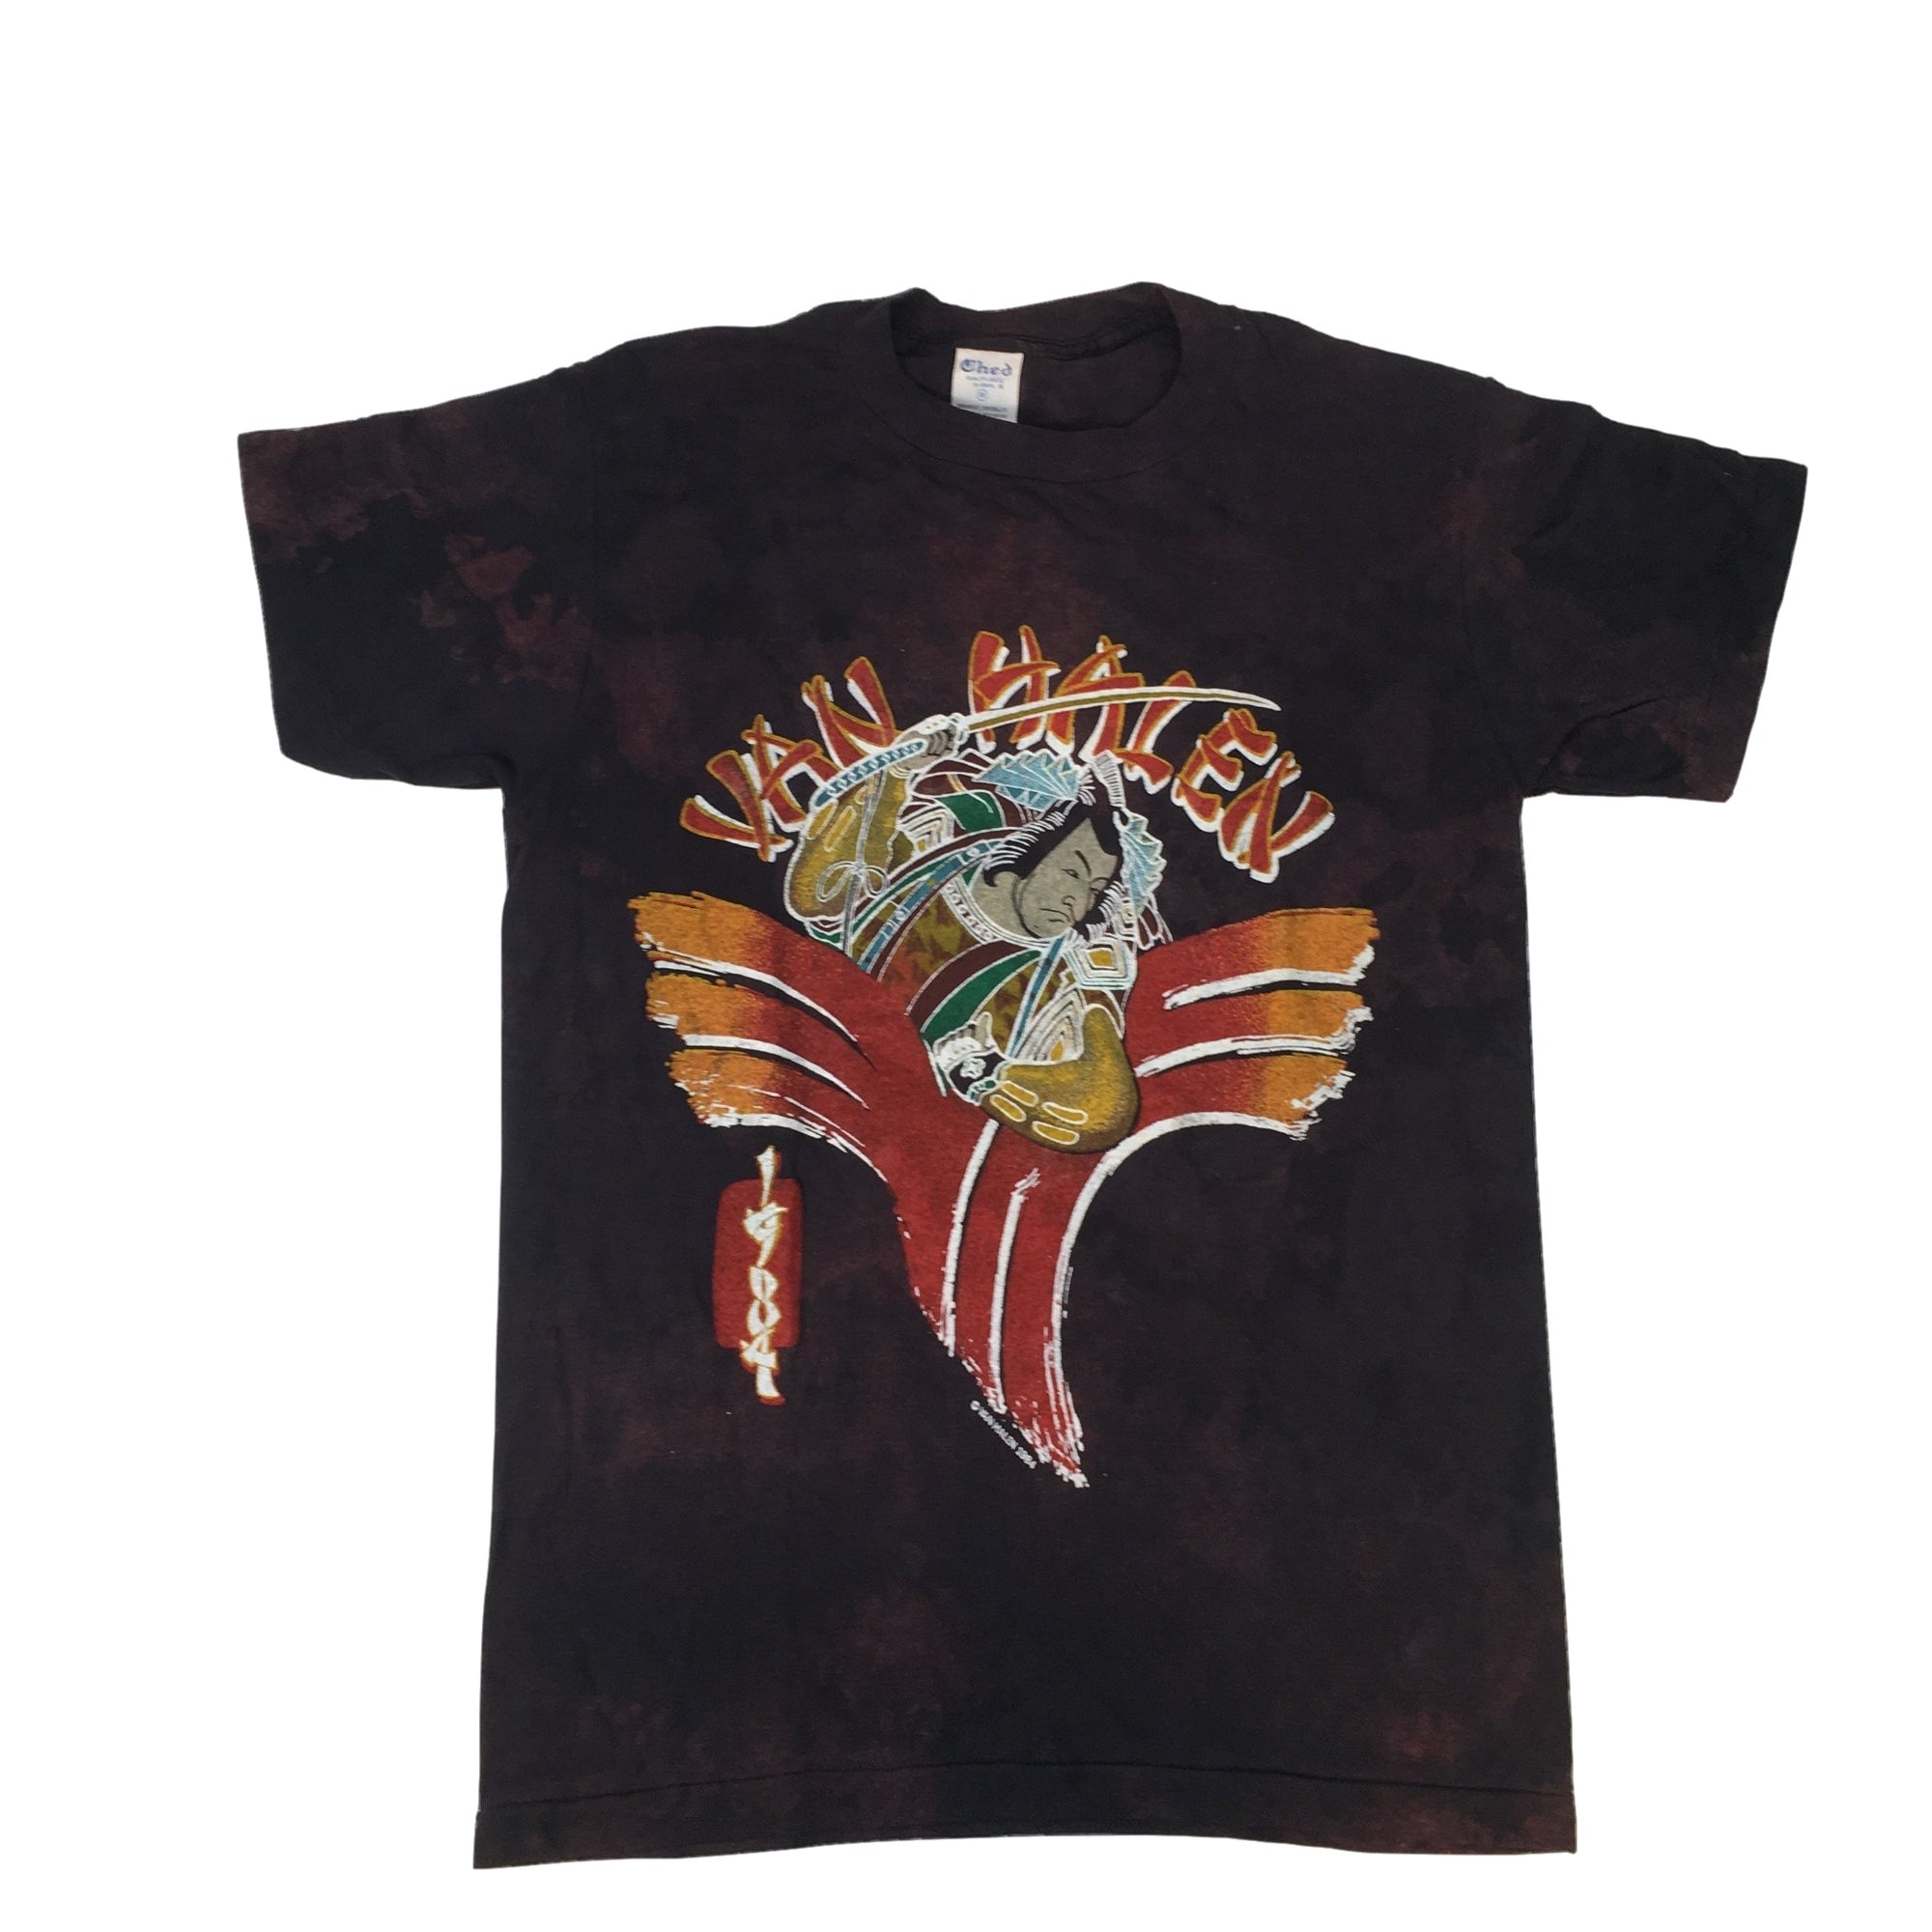 Vintage Van Halen "1984" T-Shirt - jointcustodydc